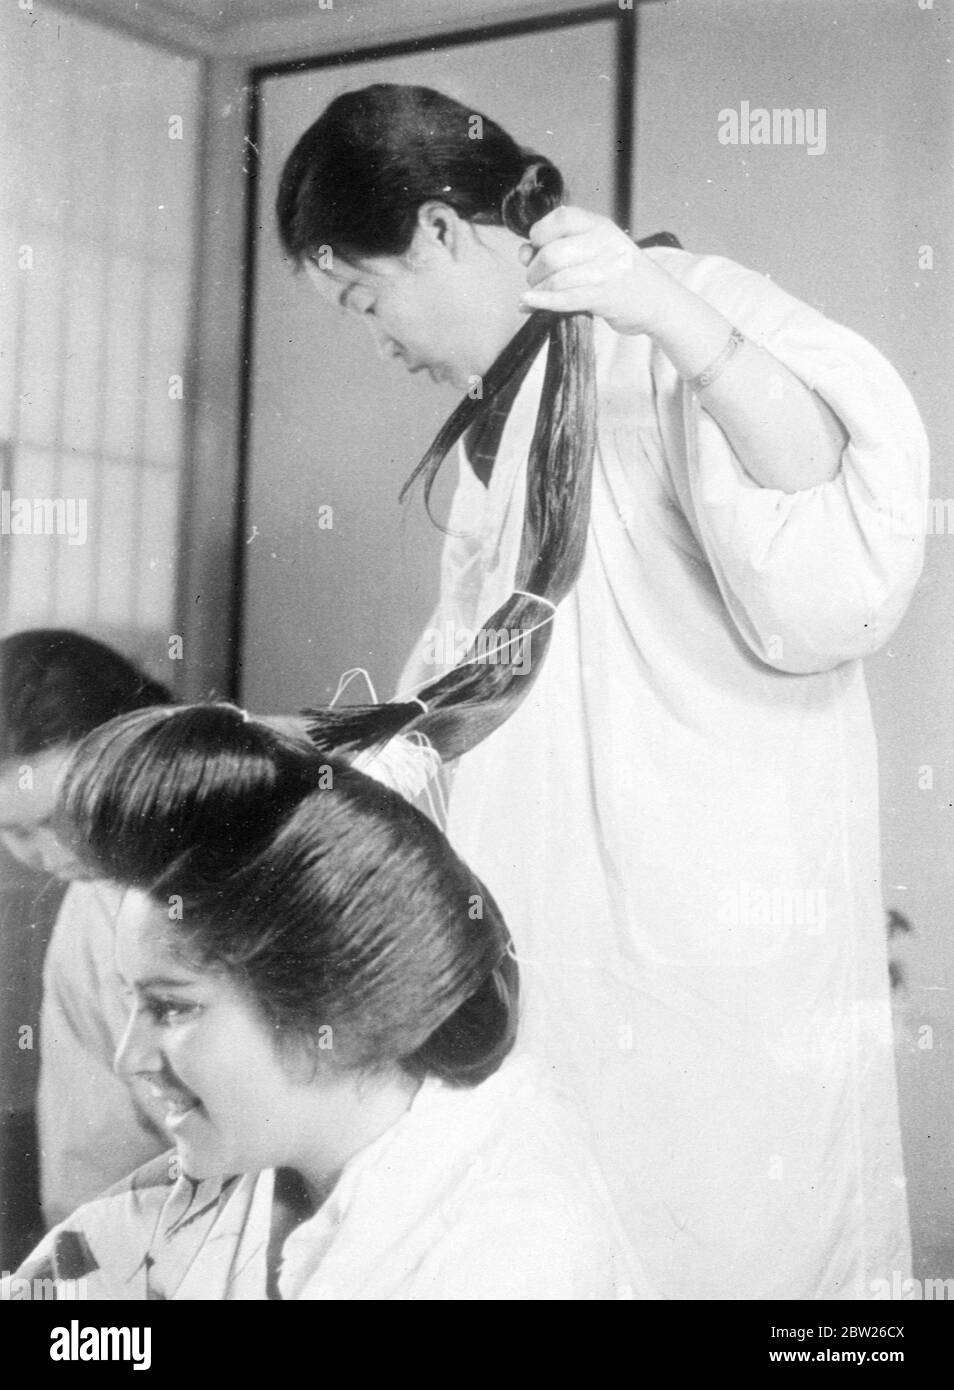 Japanische Mädchen einreichen, um 2 Stunden Agonie für verführerische coiffure. Nur wenige Menschen, die die schönen Frisuren japanischer Mädchen bewundern, erkennen die qualvolle körperliche Bestrafung, die sie durchmachen, um sie zu erhalten. Diese Bilder zeigen die komplizierten Prozesse, die nach zwei Stunden Arbeit auf Seiten des Kamiyuisan (Friseur) die endgültige Wirkung erzielen. Das Motiv für die Bilder, Adrienne Moore, und als die Frisur fertig war, sagte sie, dass sie sich beim Liegen in einem Stuhl fühlte, als ob Haskell erzählt würde und fand, dass es fast unmöglich sei, sich hinzulegen. Eine andere Tatsache, die sie entdeckte, war, dass J Stockfoto